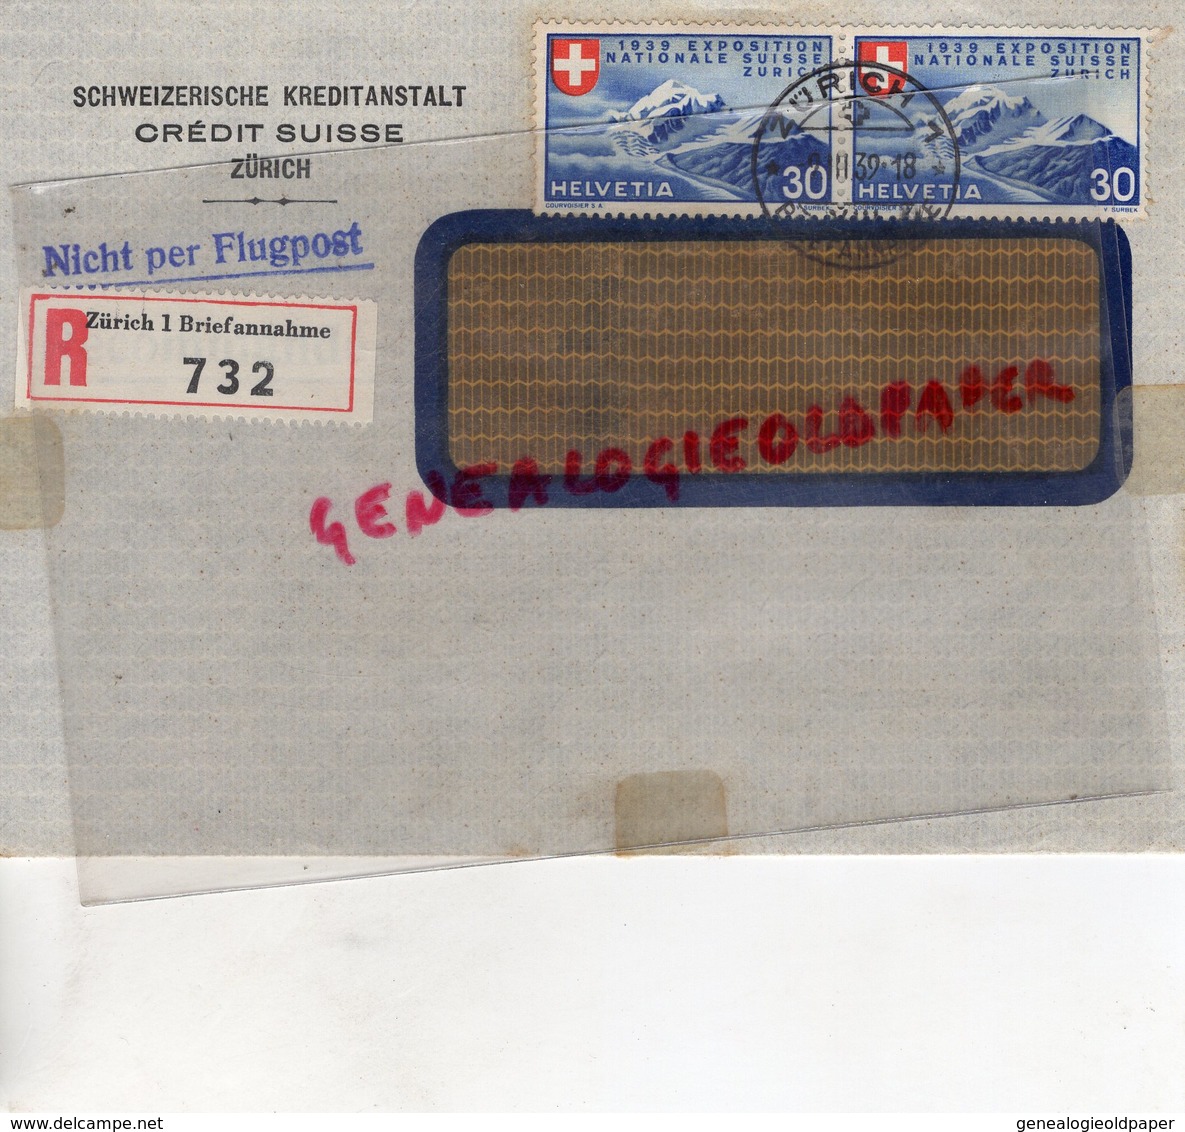 SUISSE - ZURICH- RARE ENVELOPPE SCHWEIZERISCHE KREDITANSTALT- CREDIT SUISSE -1939- NICHT PER FLUGPOST-SAINT JUNIEN 87 - Schweiz